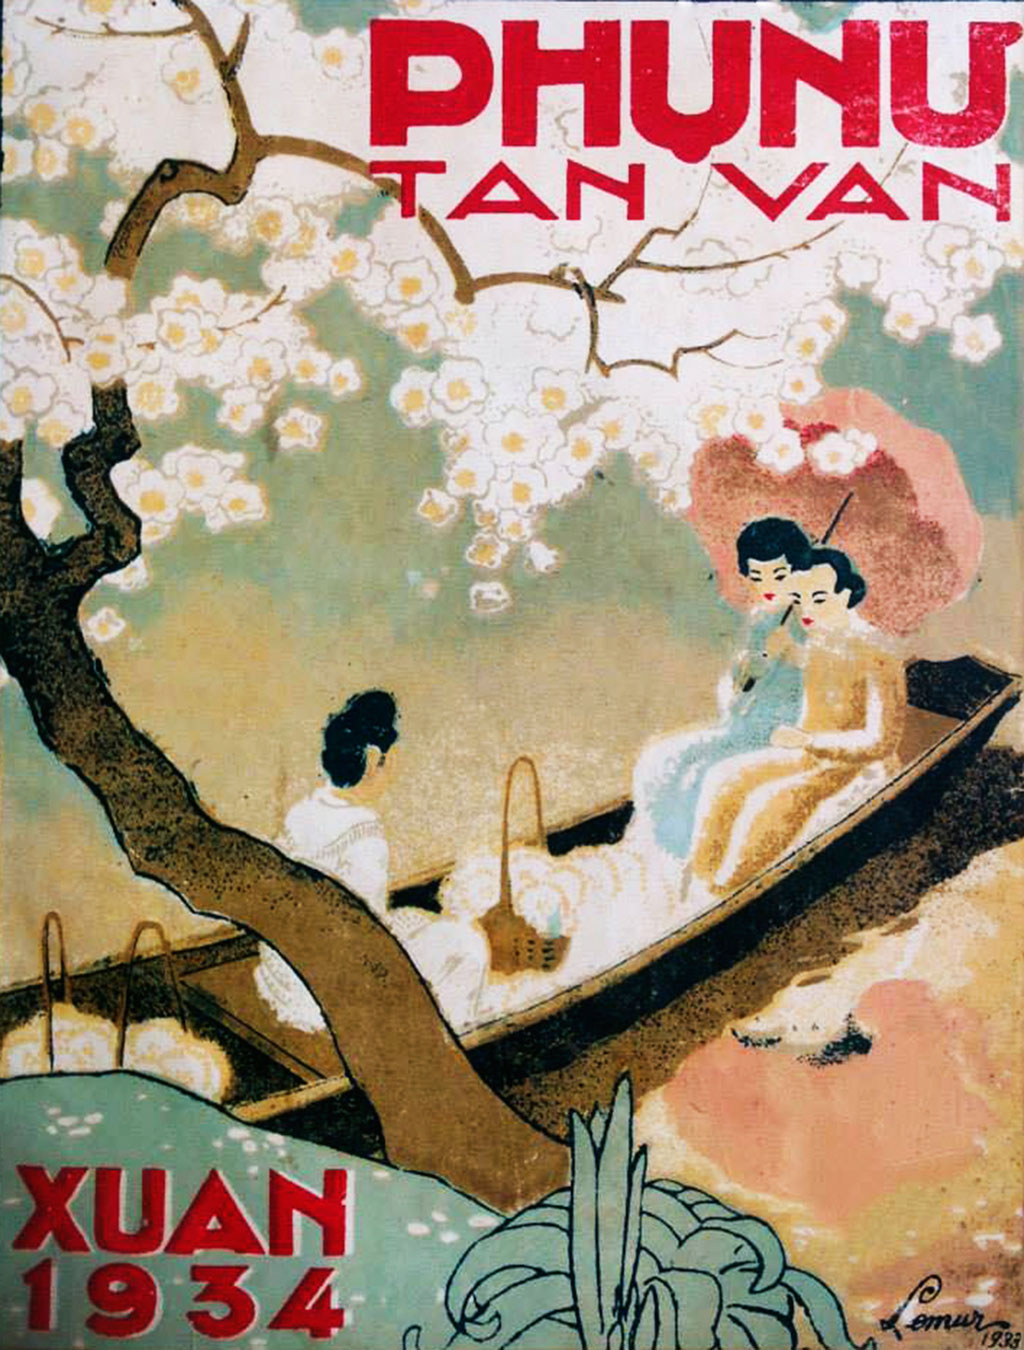 Phong vị báo xuân xưa: Phụ Nữ Tân Văn và cuộc thi bìa báo xuân năm 1933 3